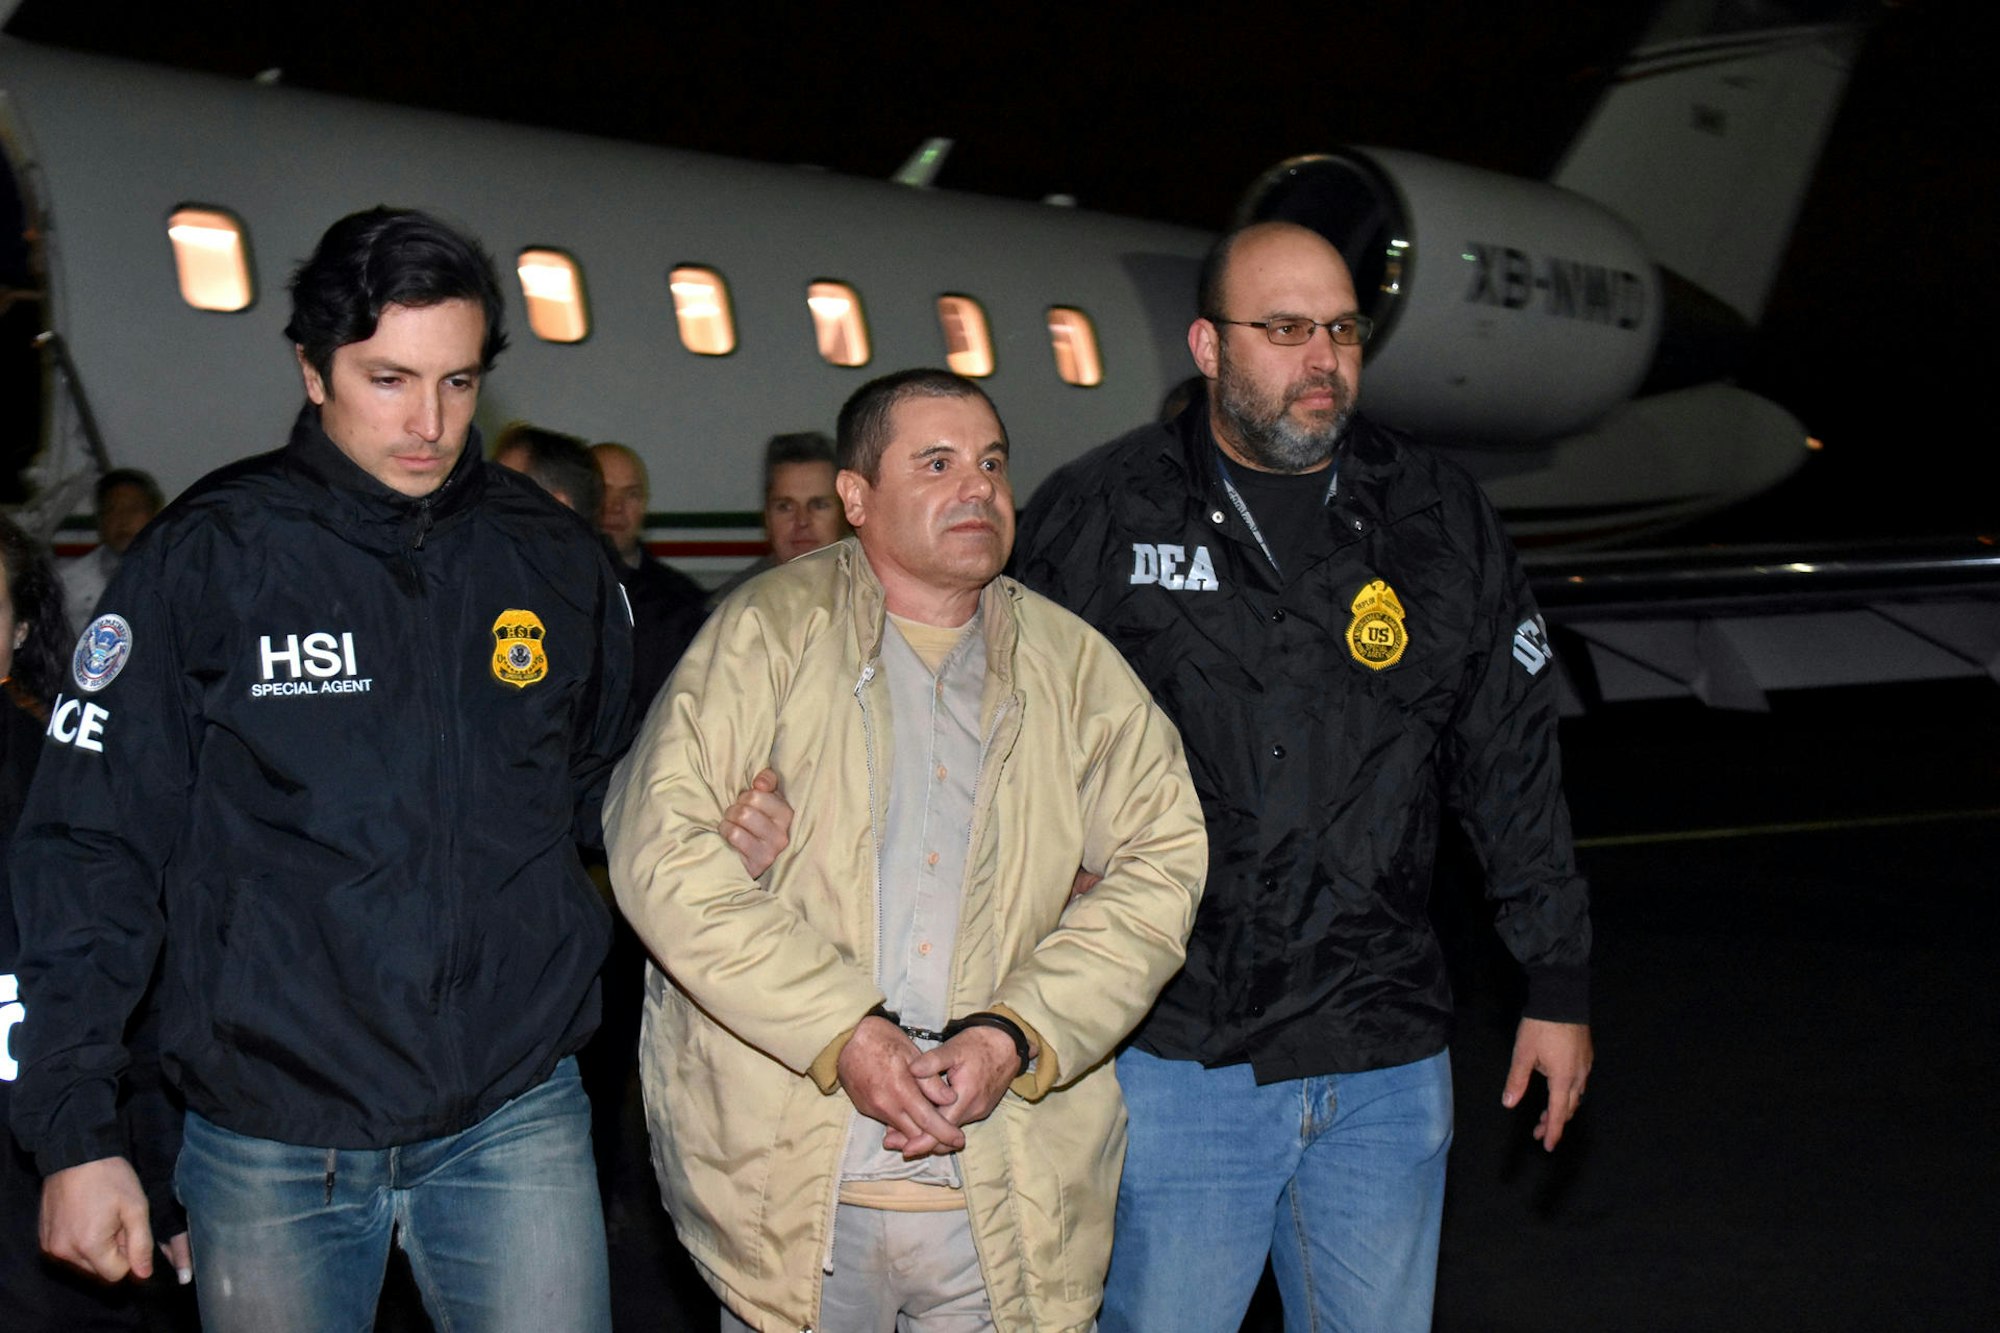 El Chapo in Handschellen